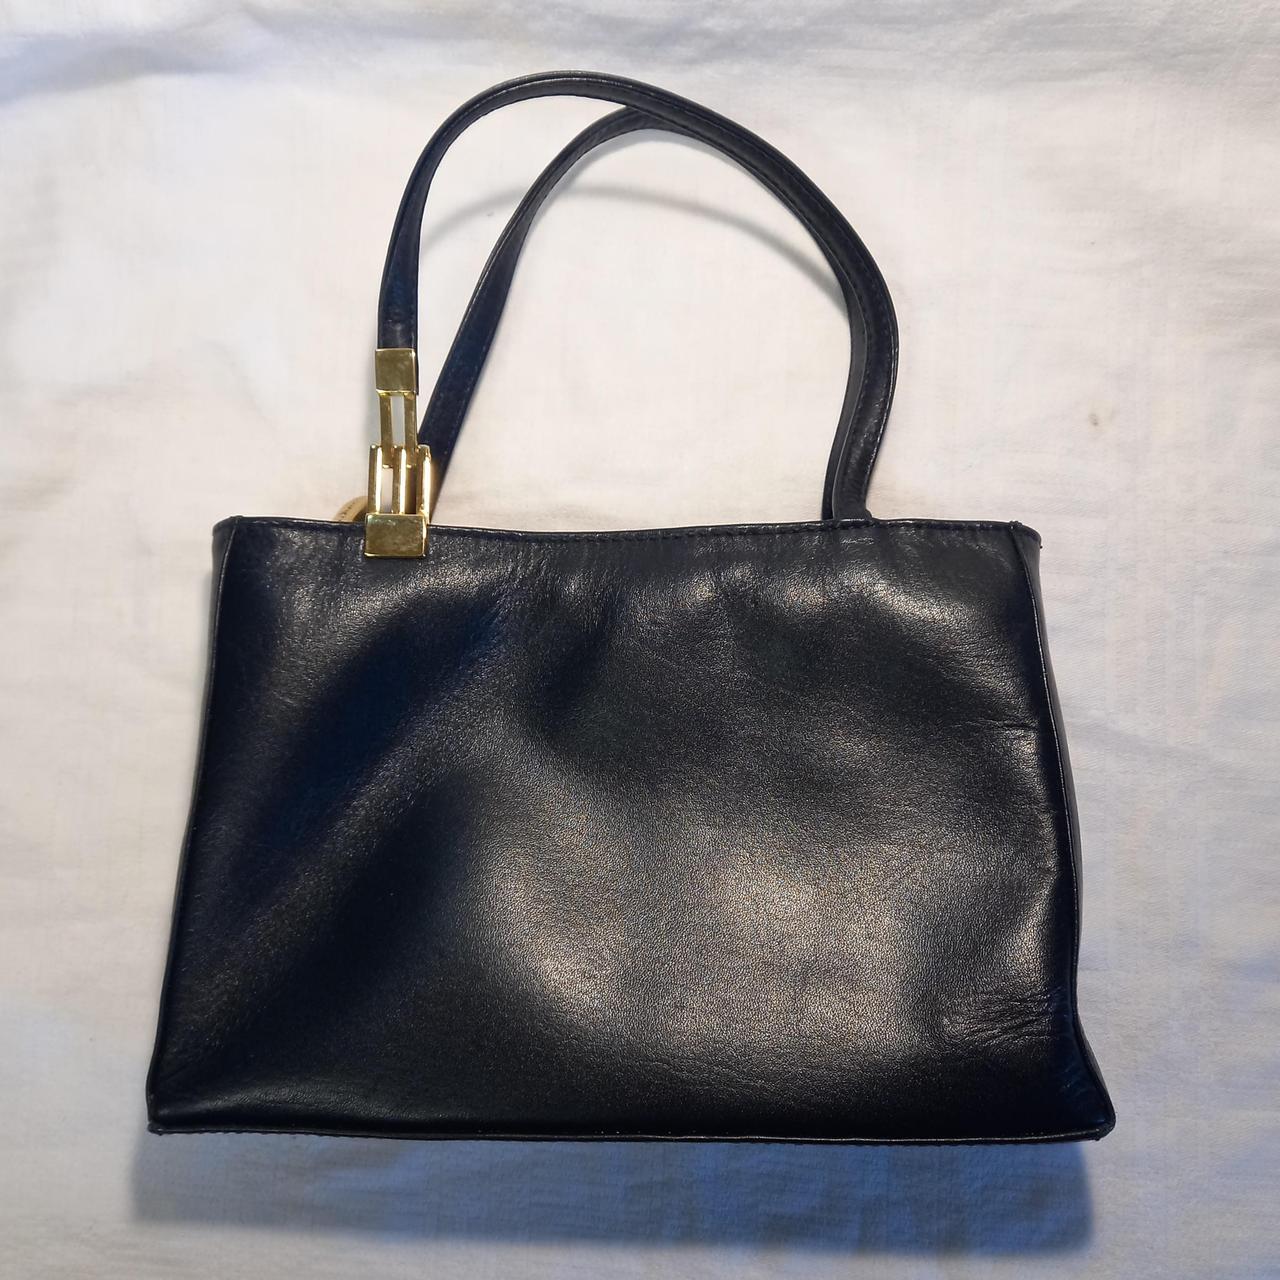 Jane Shilton Women's Black Bag | Depop